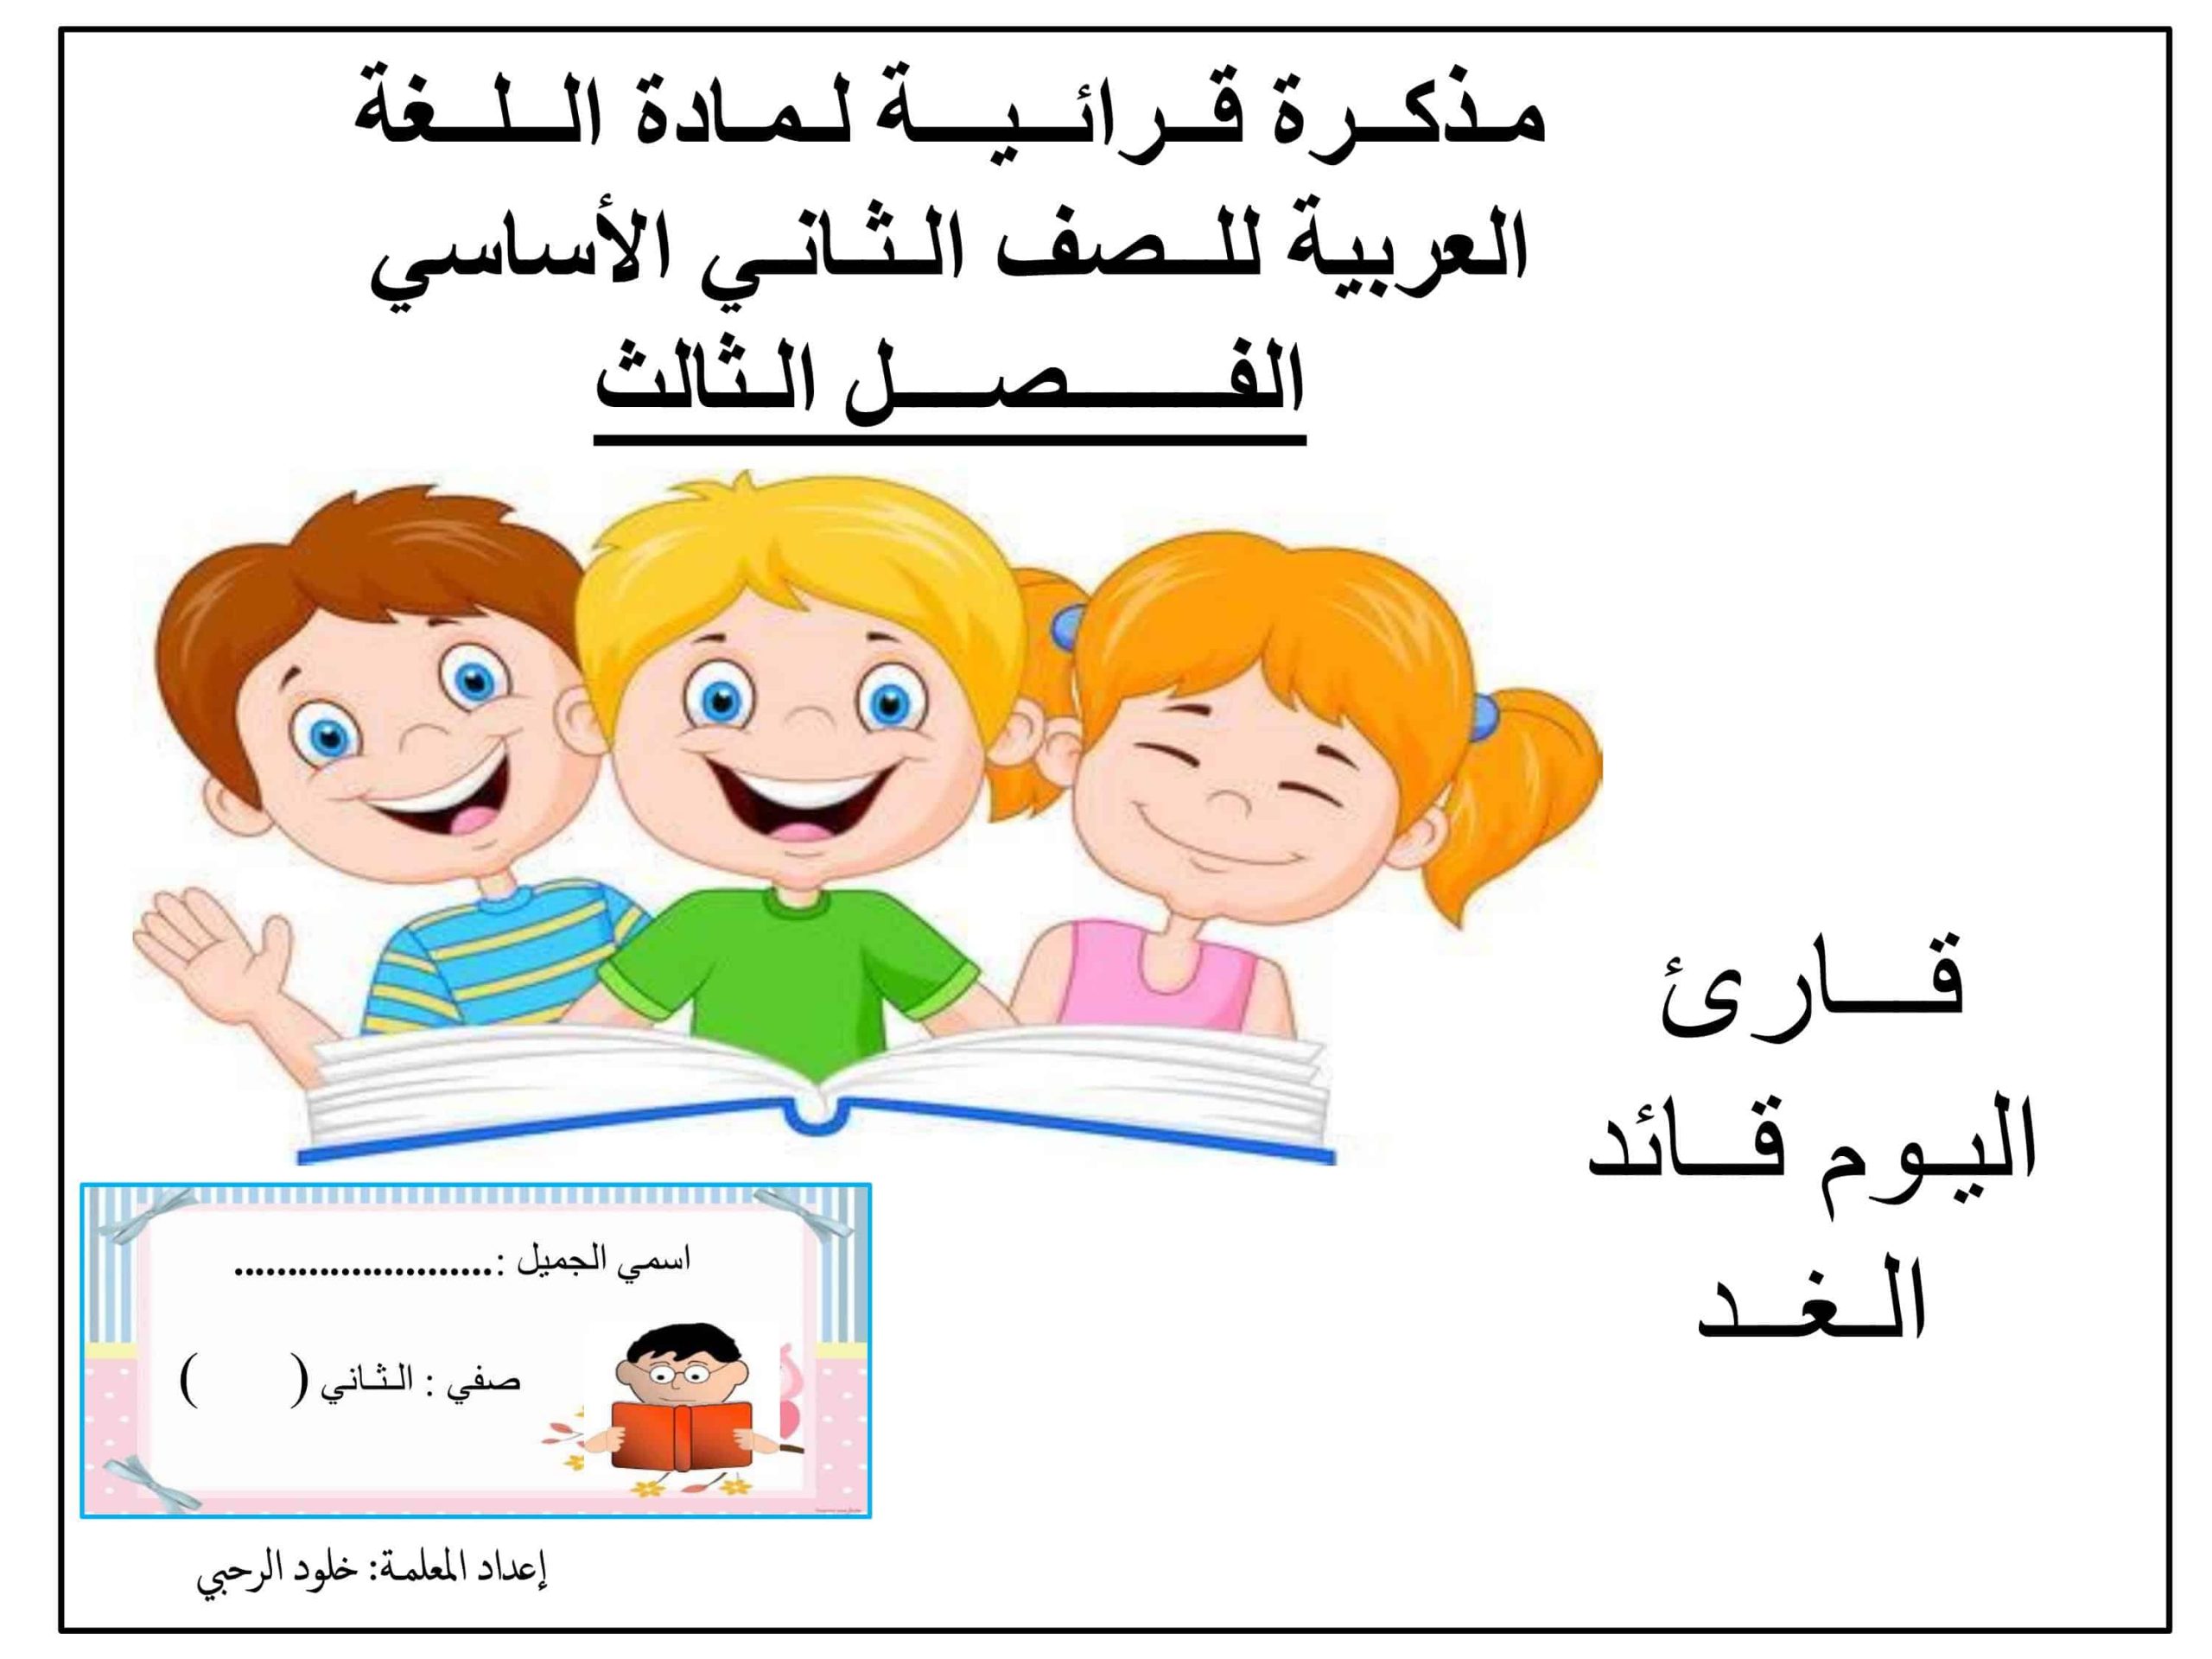 مذكرة قرائية الفصل الدراسي الثالث الصف الثاني مادة اللغة العربية 